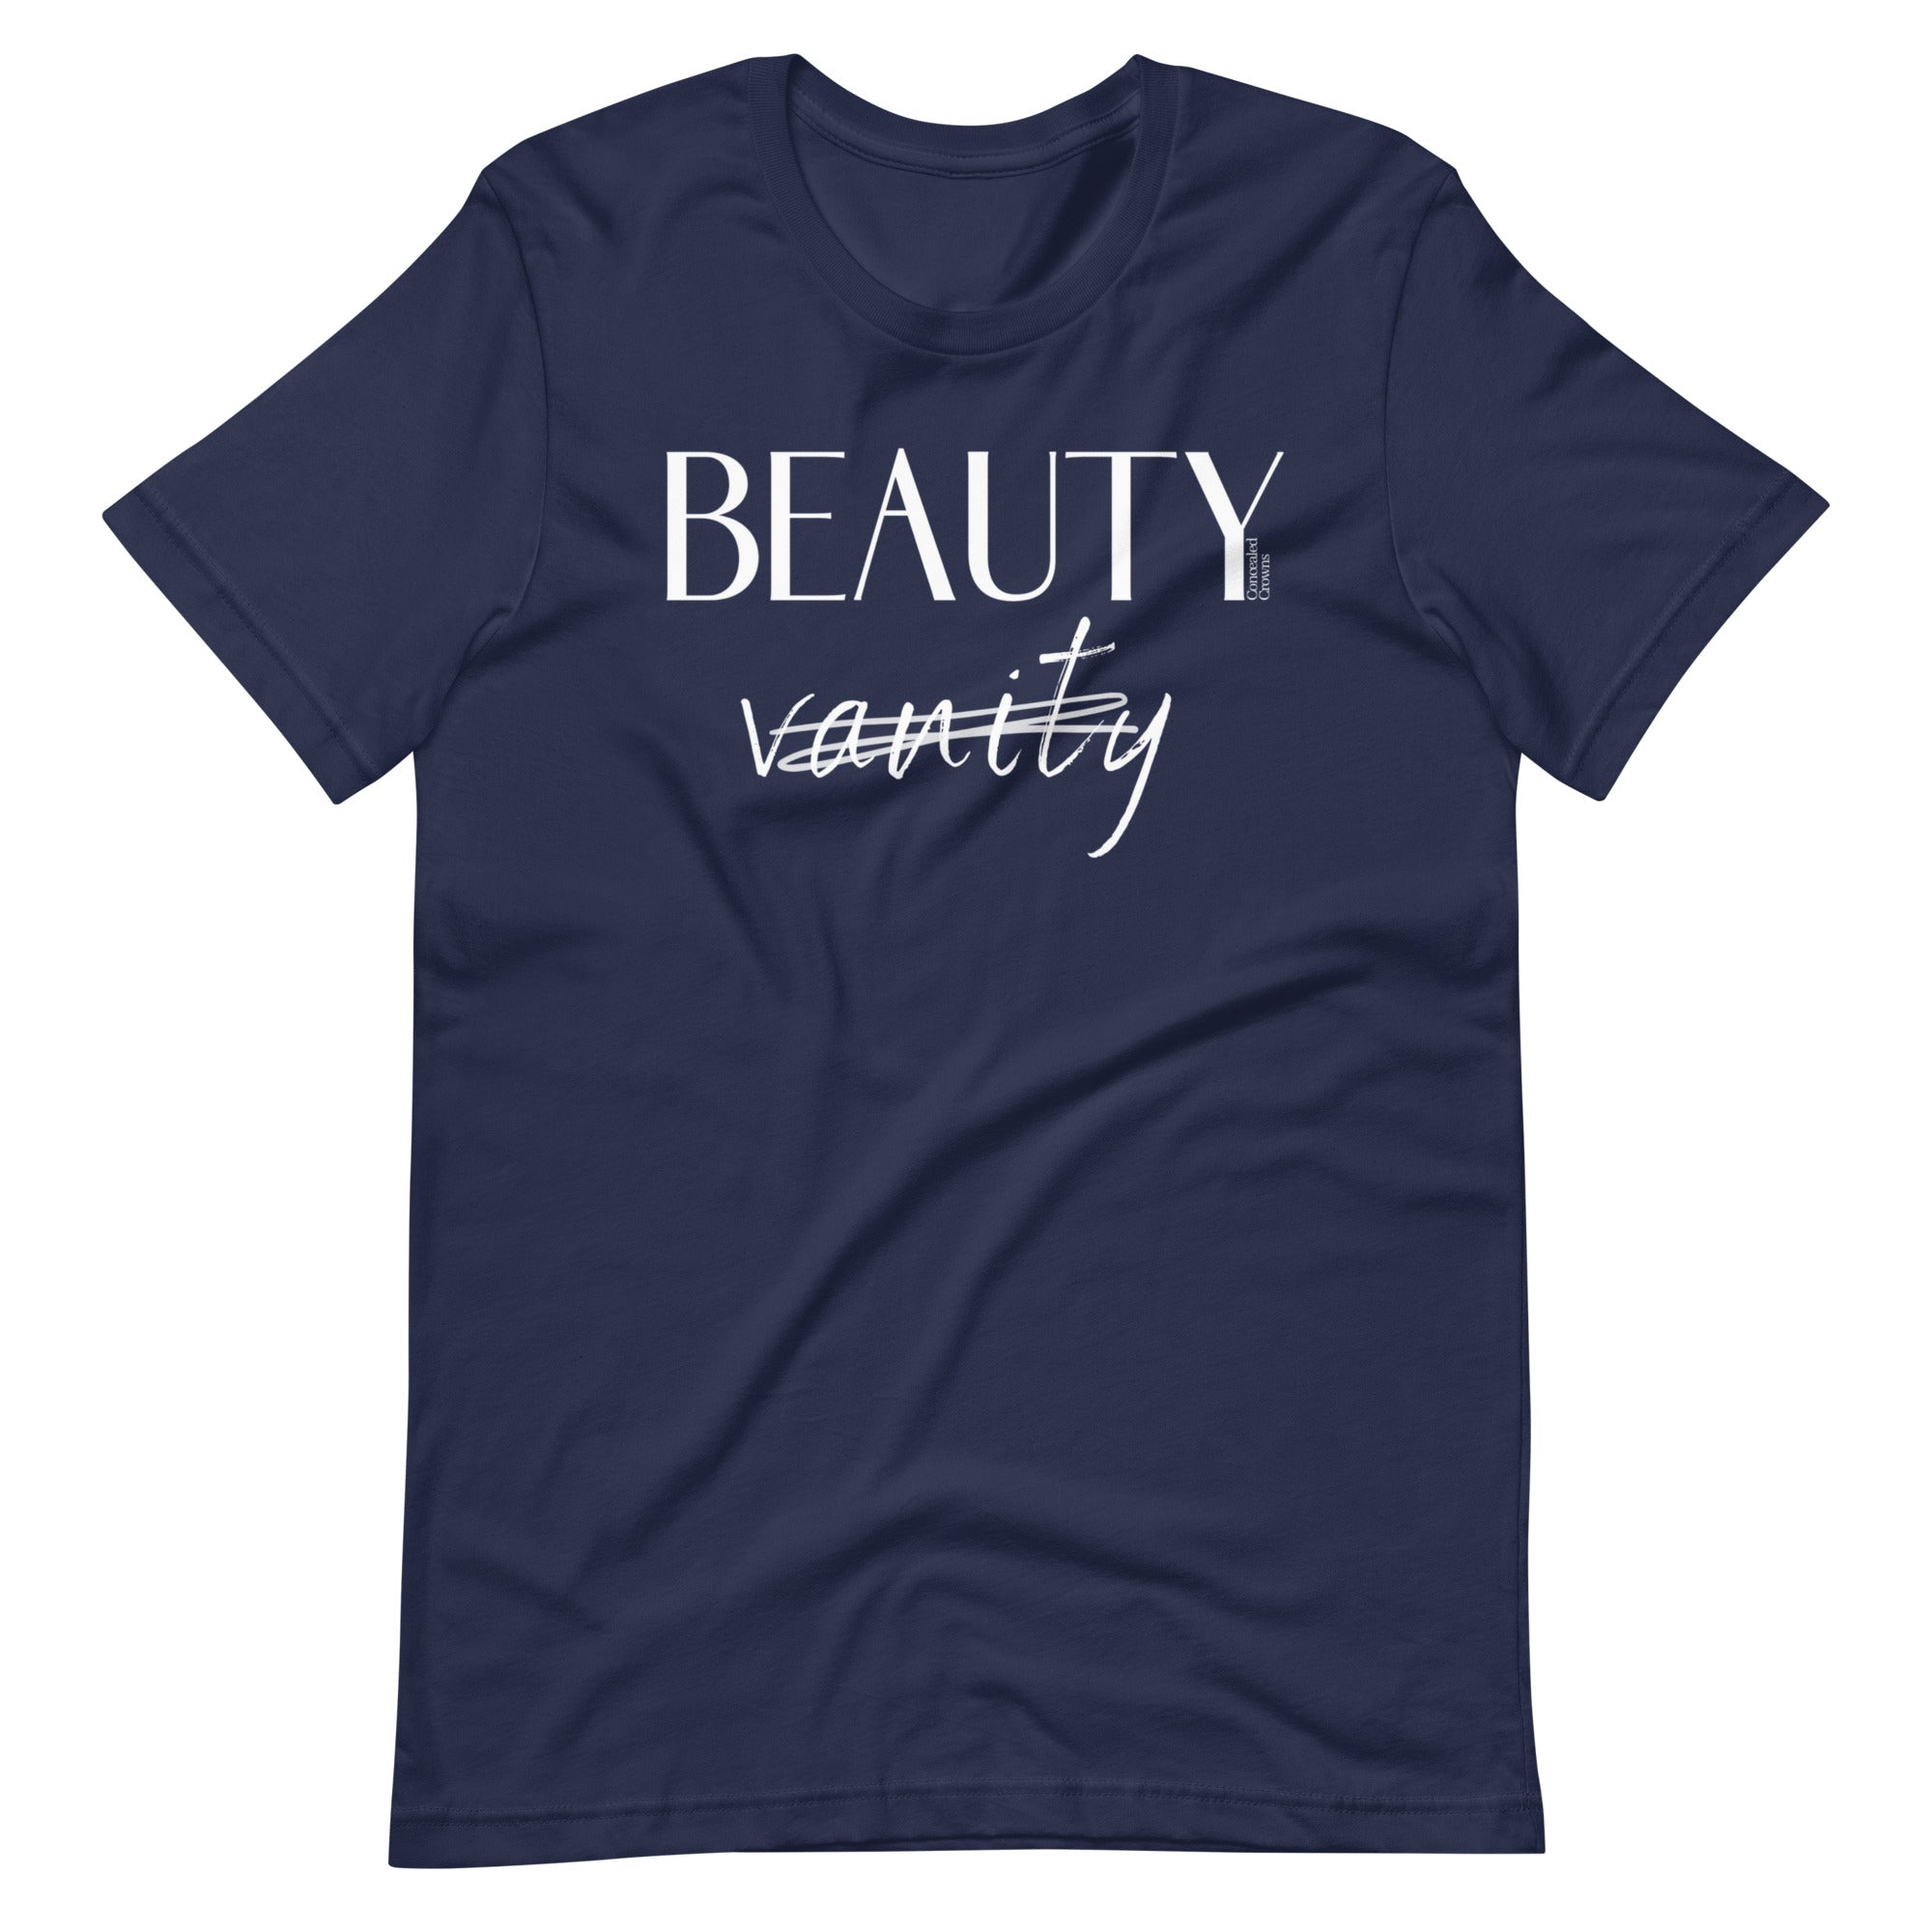 Beauty Over Vanity